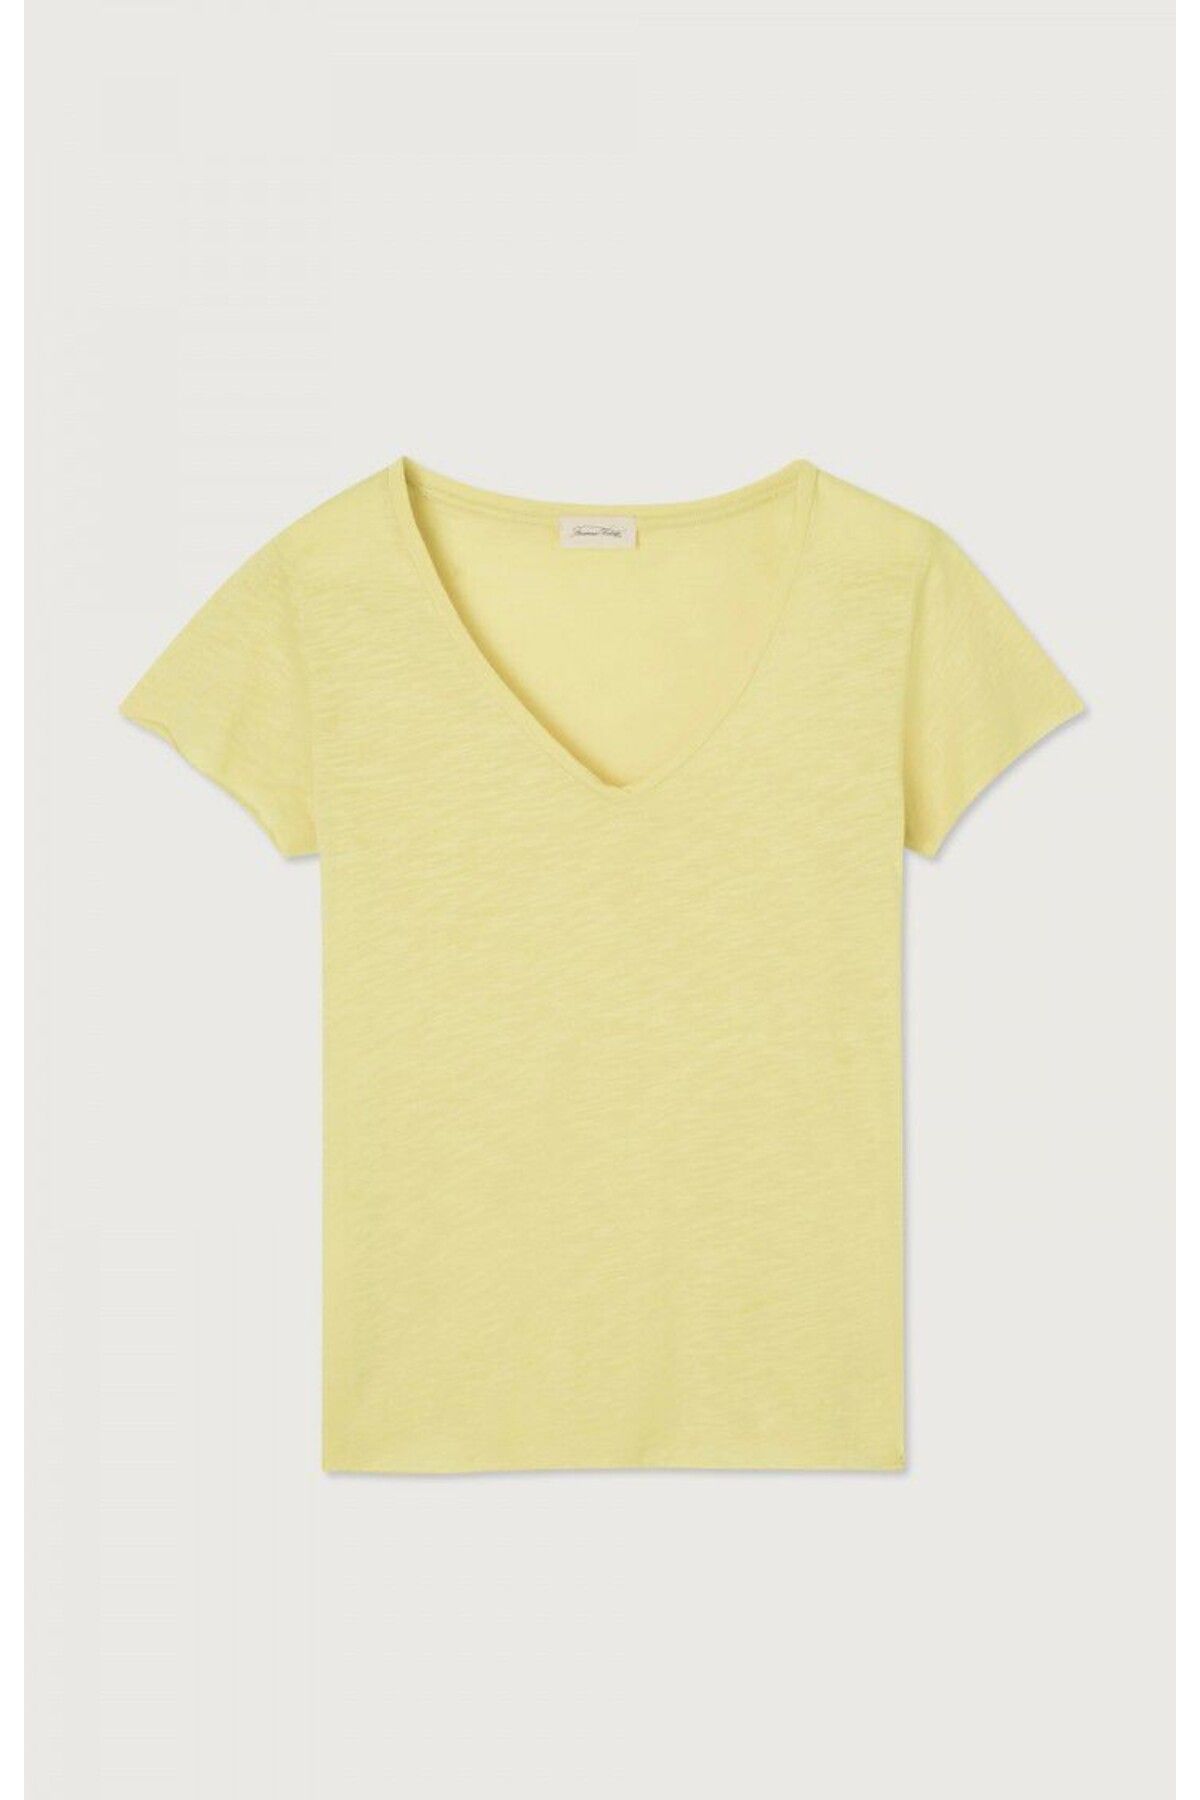 American Vintage Jacksonville Kadın Açık Sarı T-Shirt V Yaka